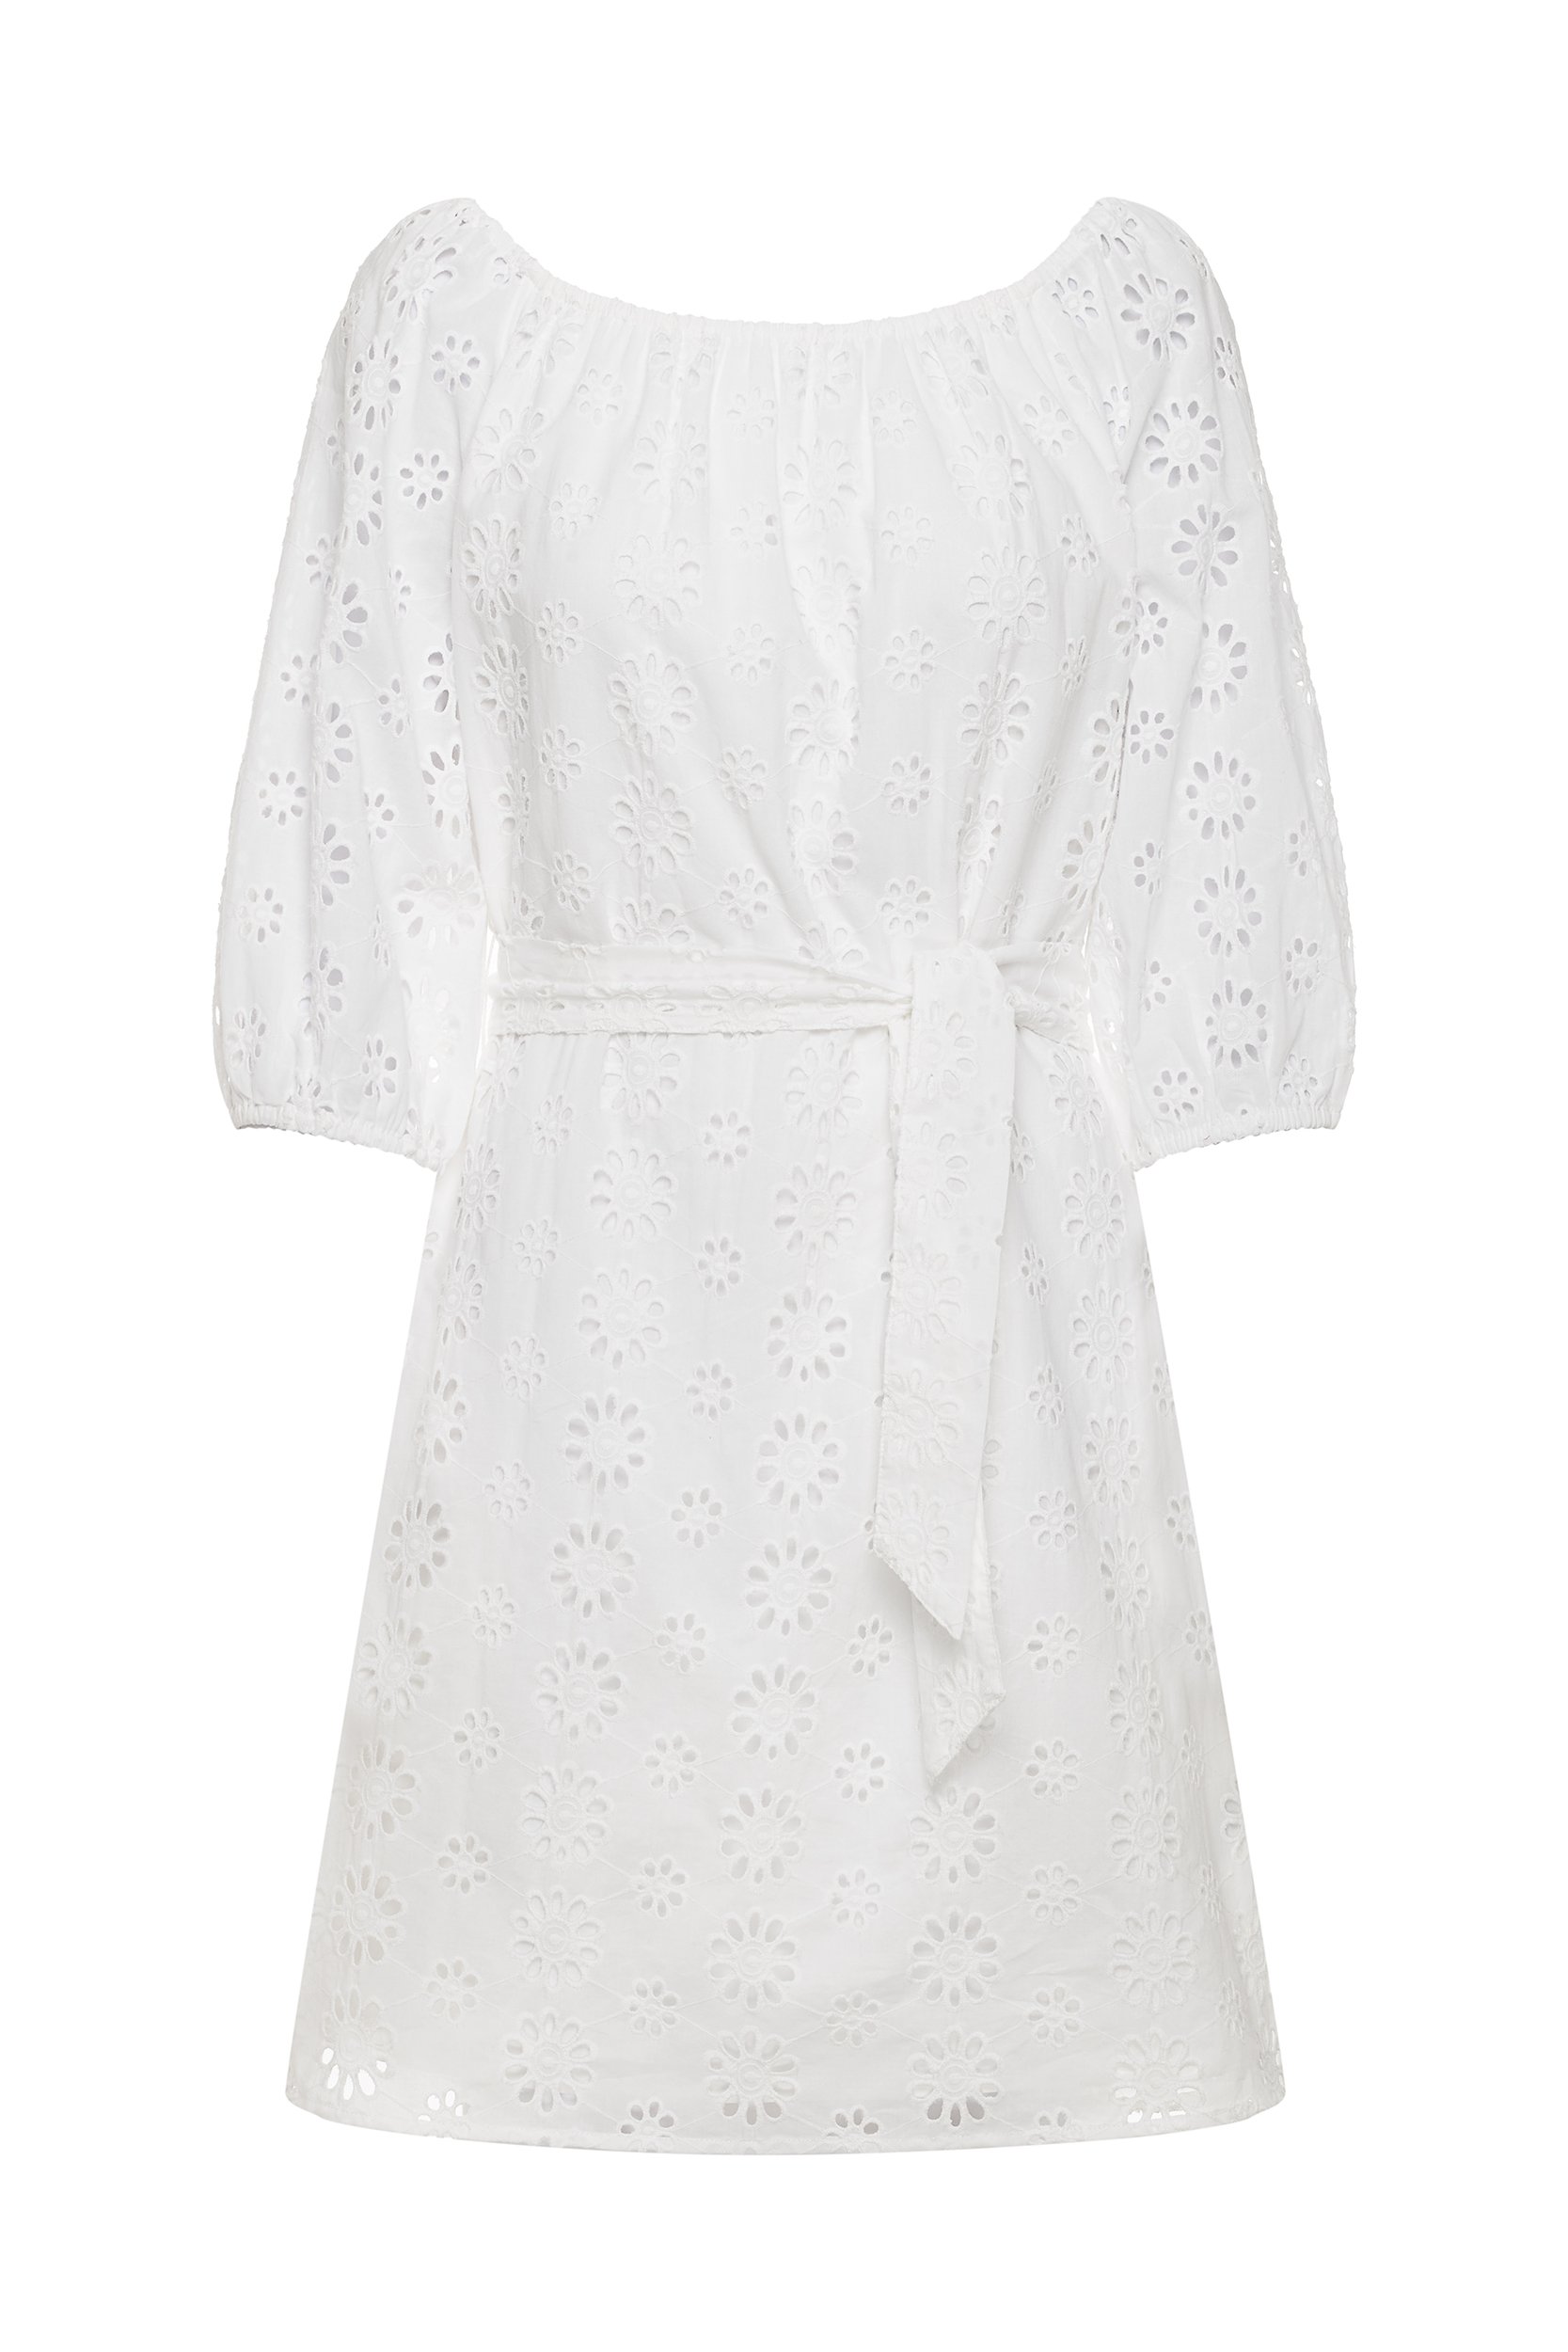 Biała sukienka w haftowane kwiaty